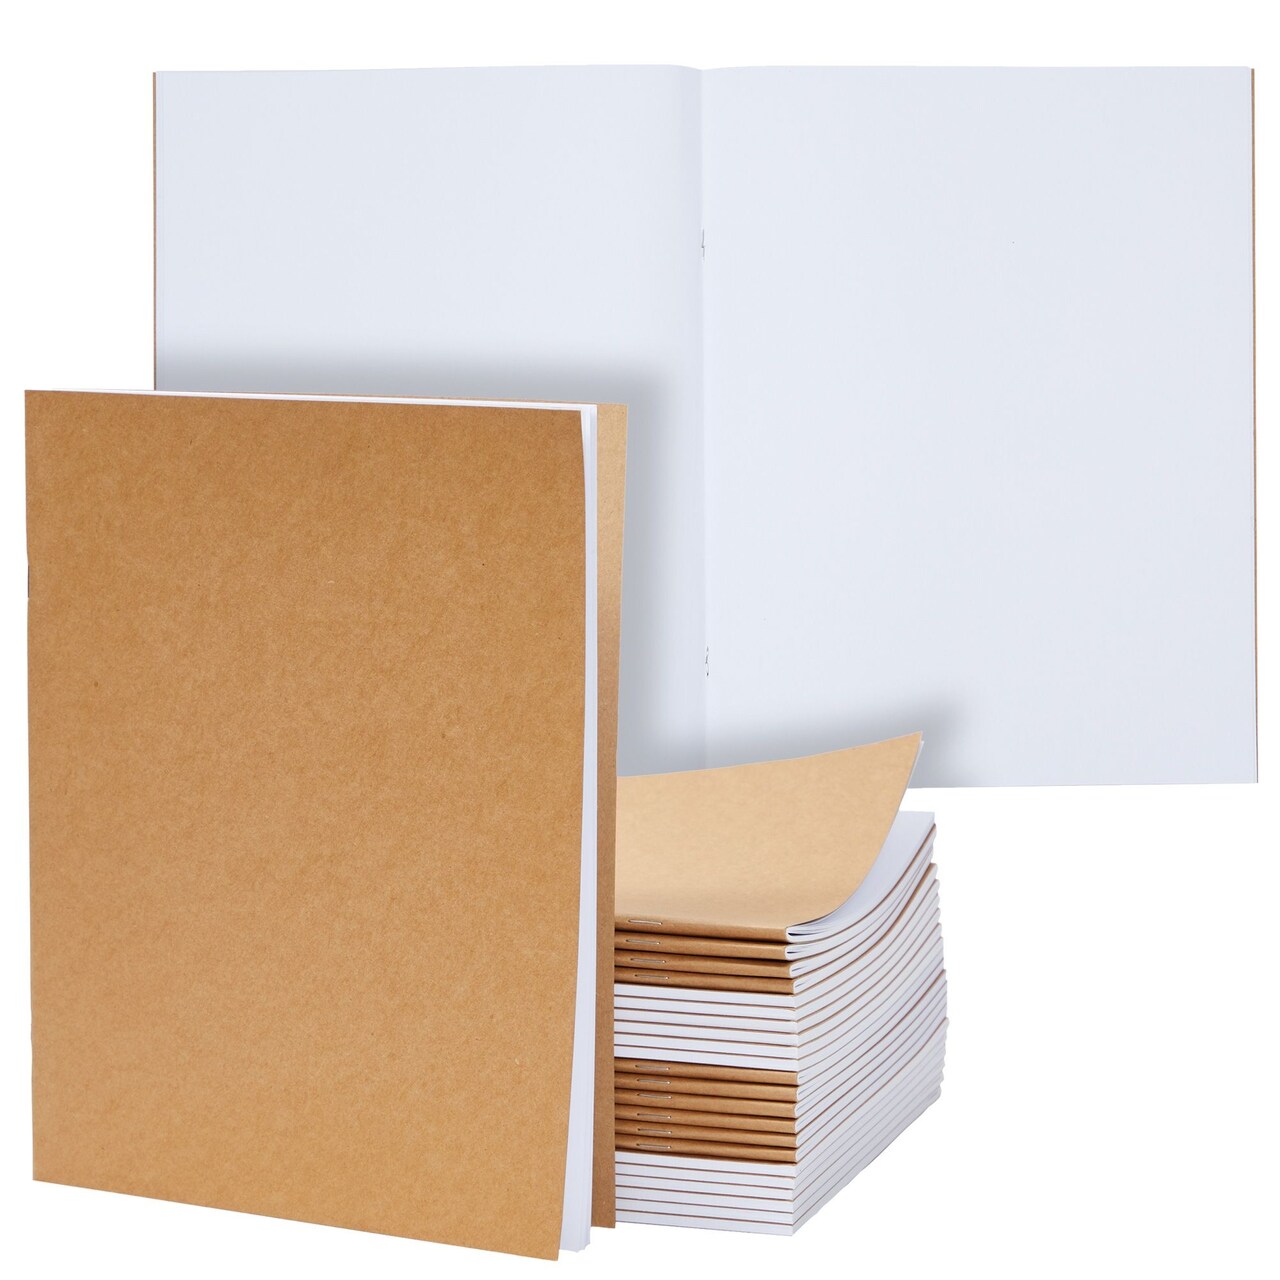 24-Pack Large Kraft Paper Unlined Notebook 8.5 x 11, Letter Size Blank  Inside Journals Bulk Set for Kids, Artists, Drawing, Sketchbook, Office